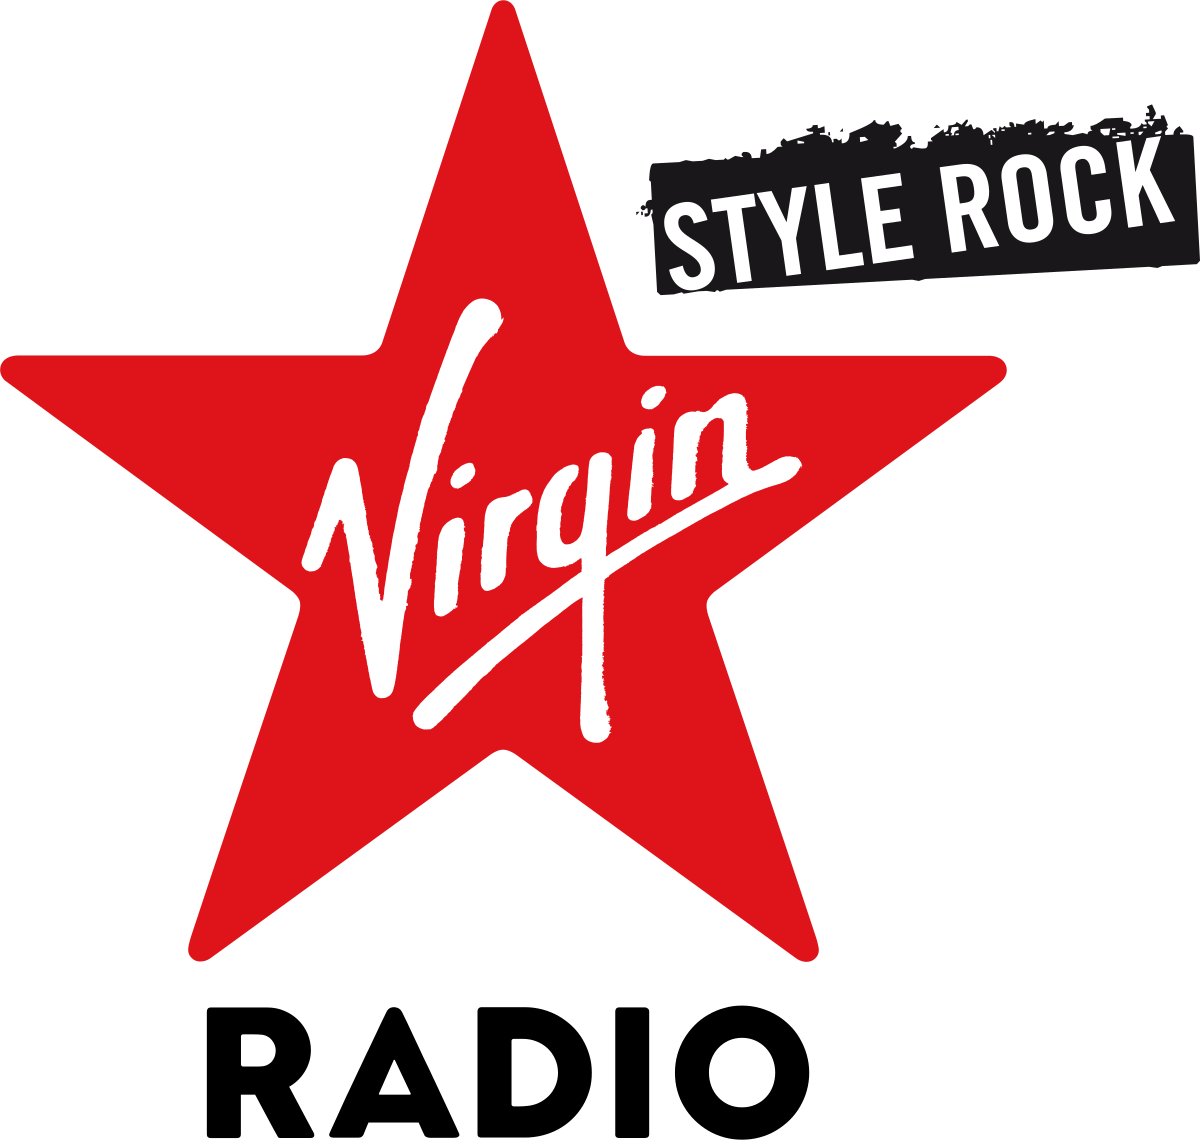 Virgin Radio (Italia) - Wikipedia